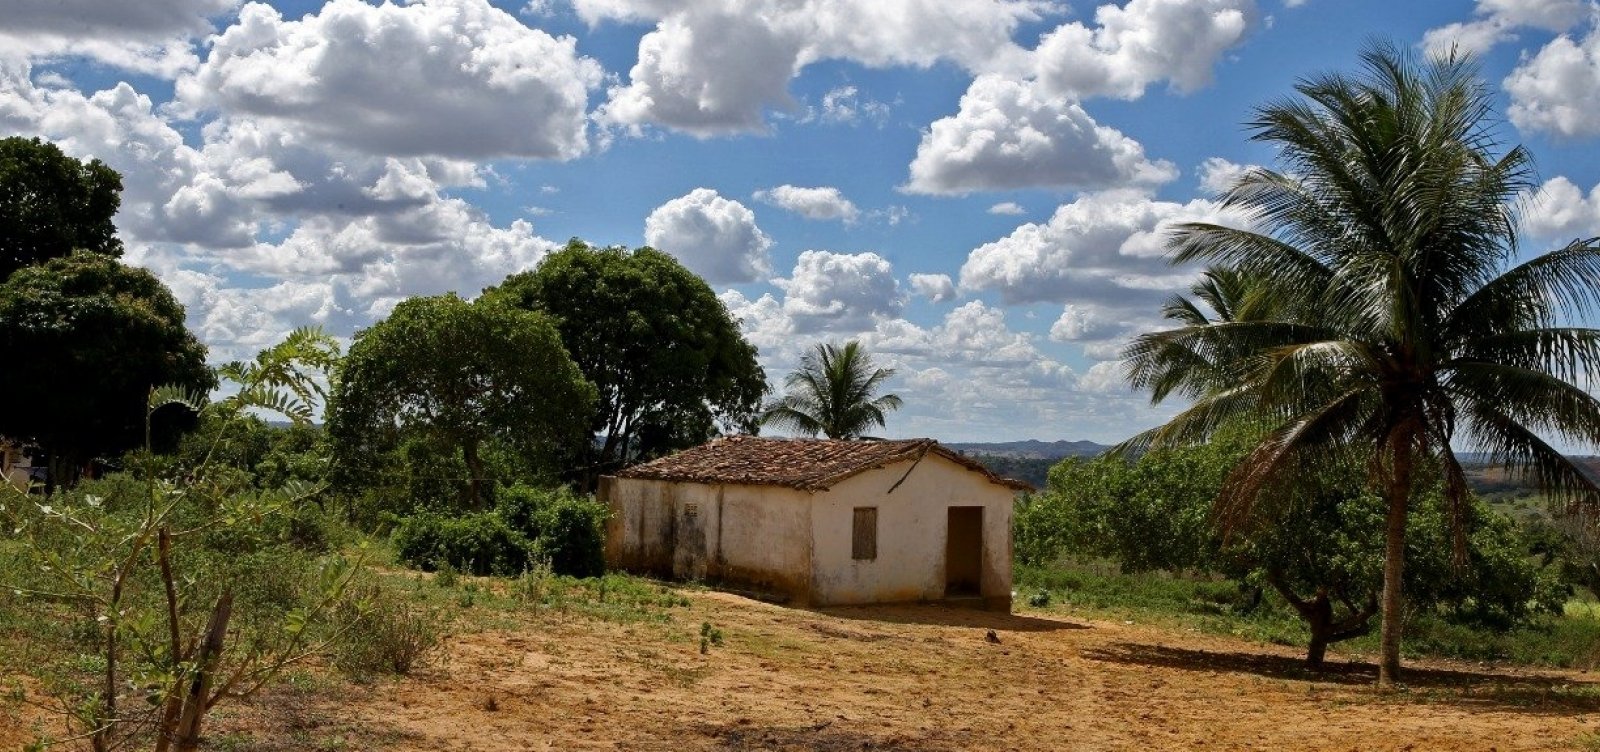 Distrito quilombola em Aramari ganha 15 unidades habitacionais